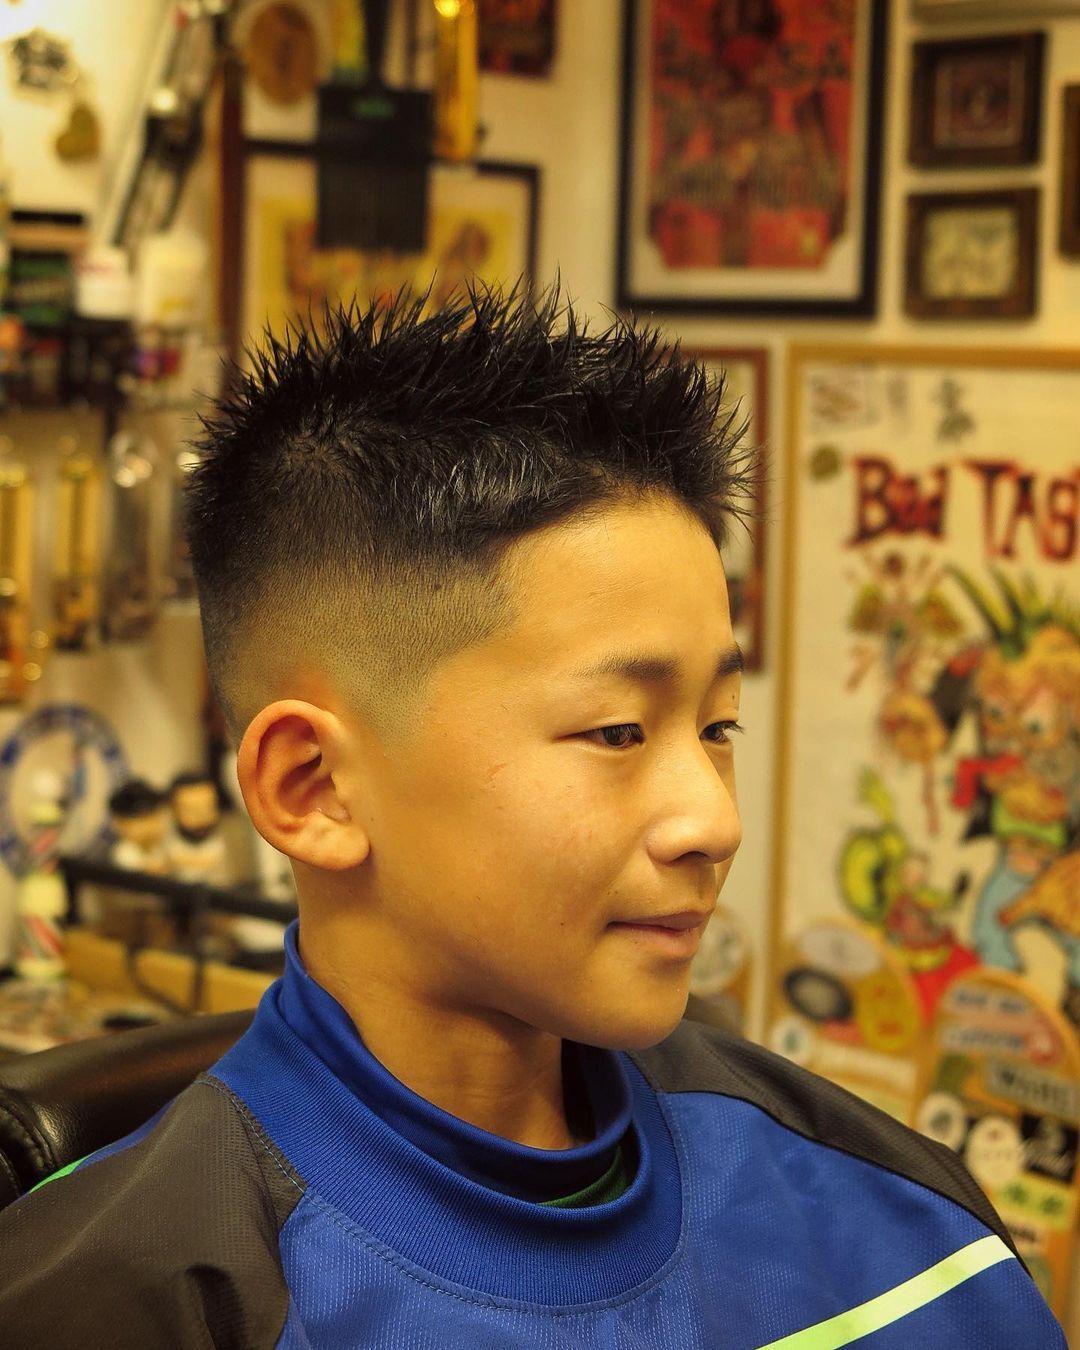 短碎发算是一种比较简单的小男孩发型,但是帅气一点都不差